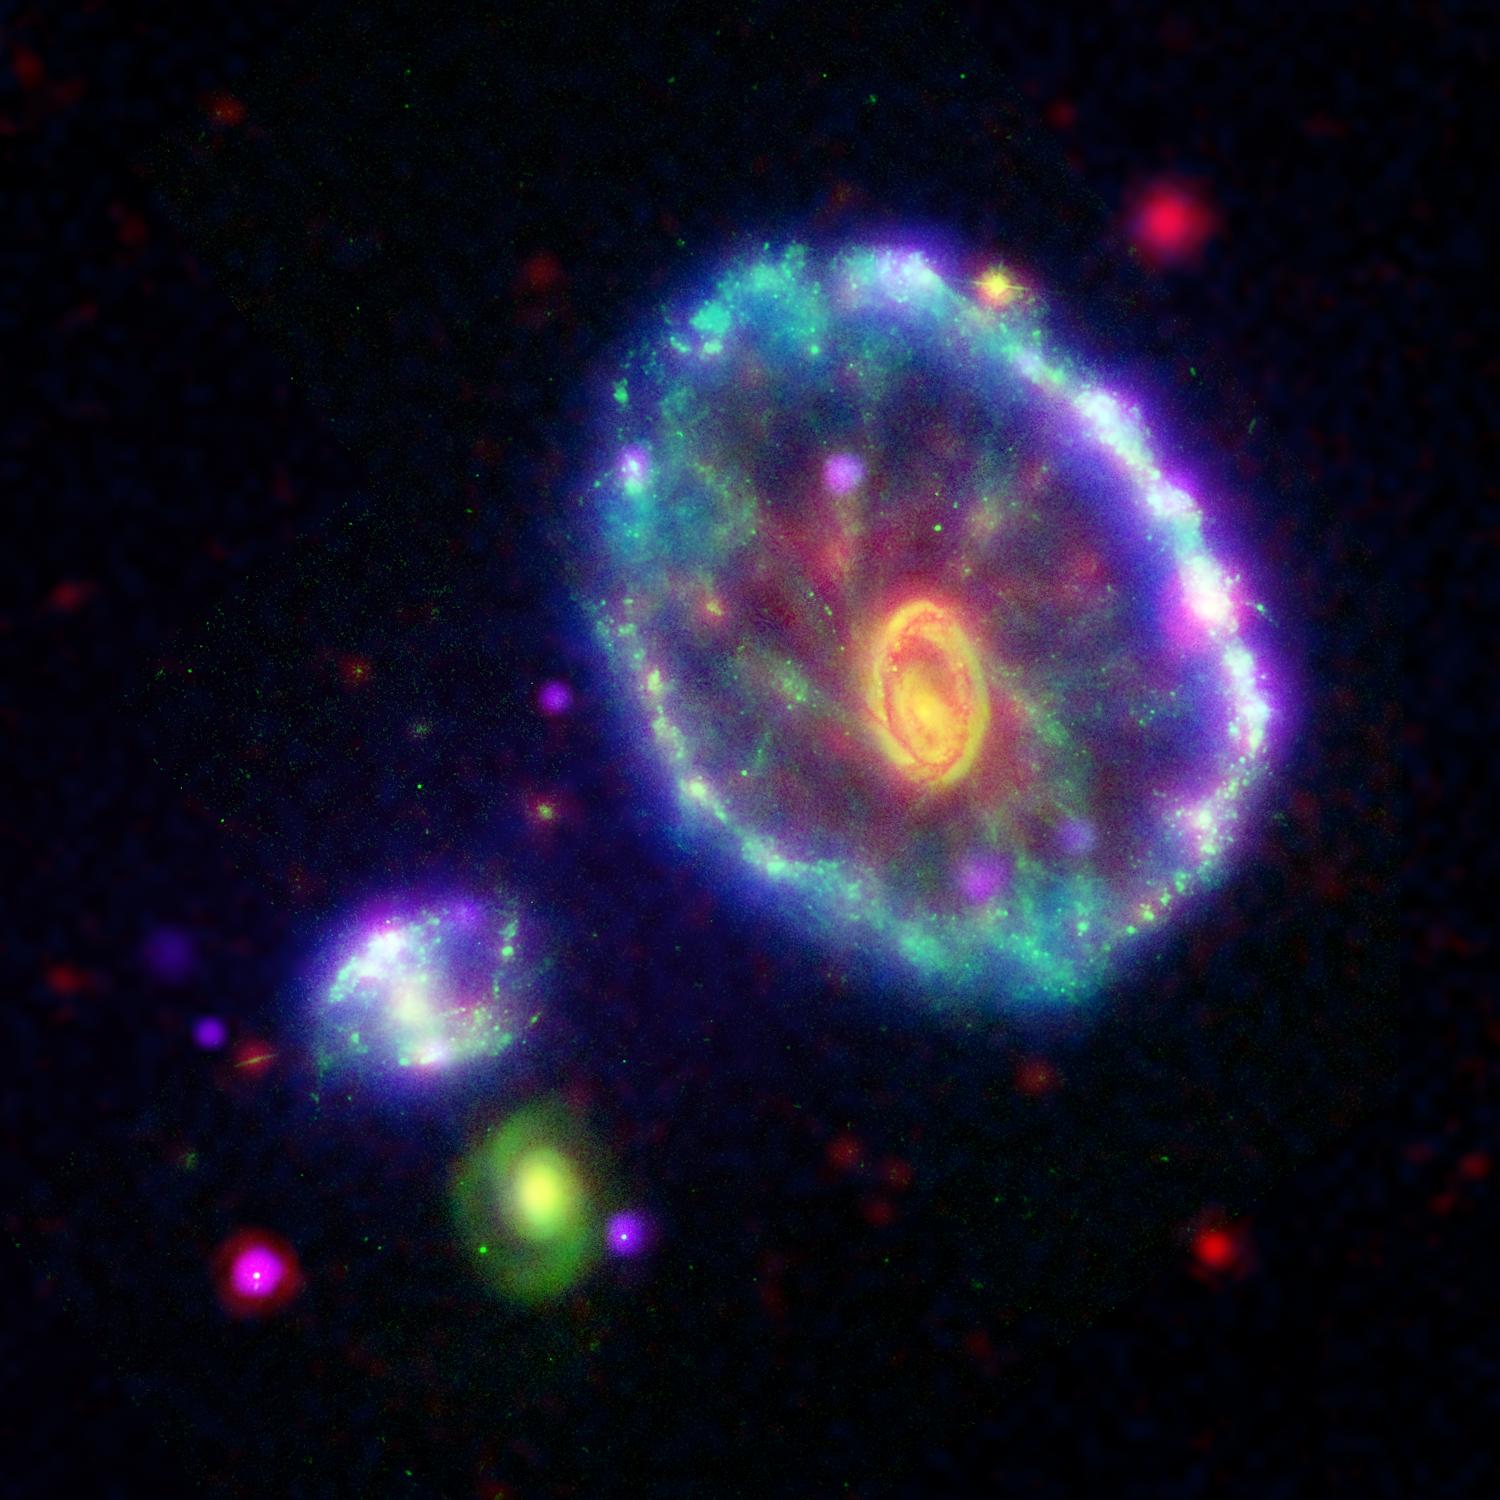 綺麗な銀河 星雲 1180 運用16年 スピッツァー宇宙望遠鏡が残した16のポートレート 3 改訂 我家のｉｔ化